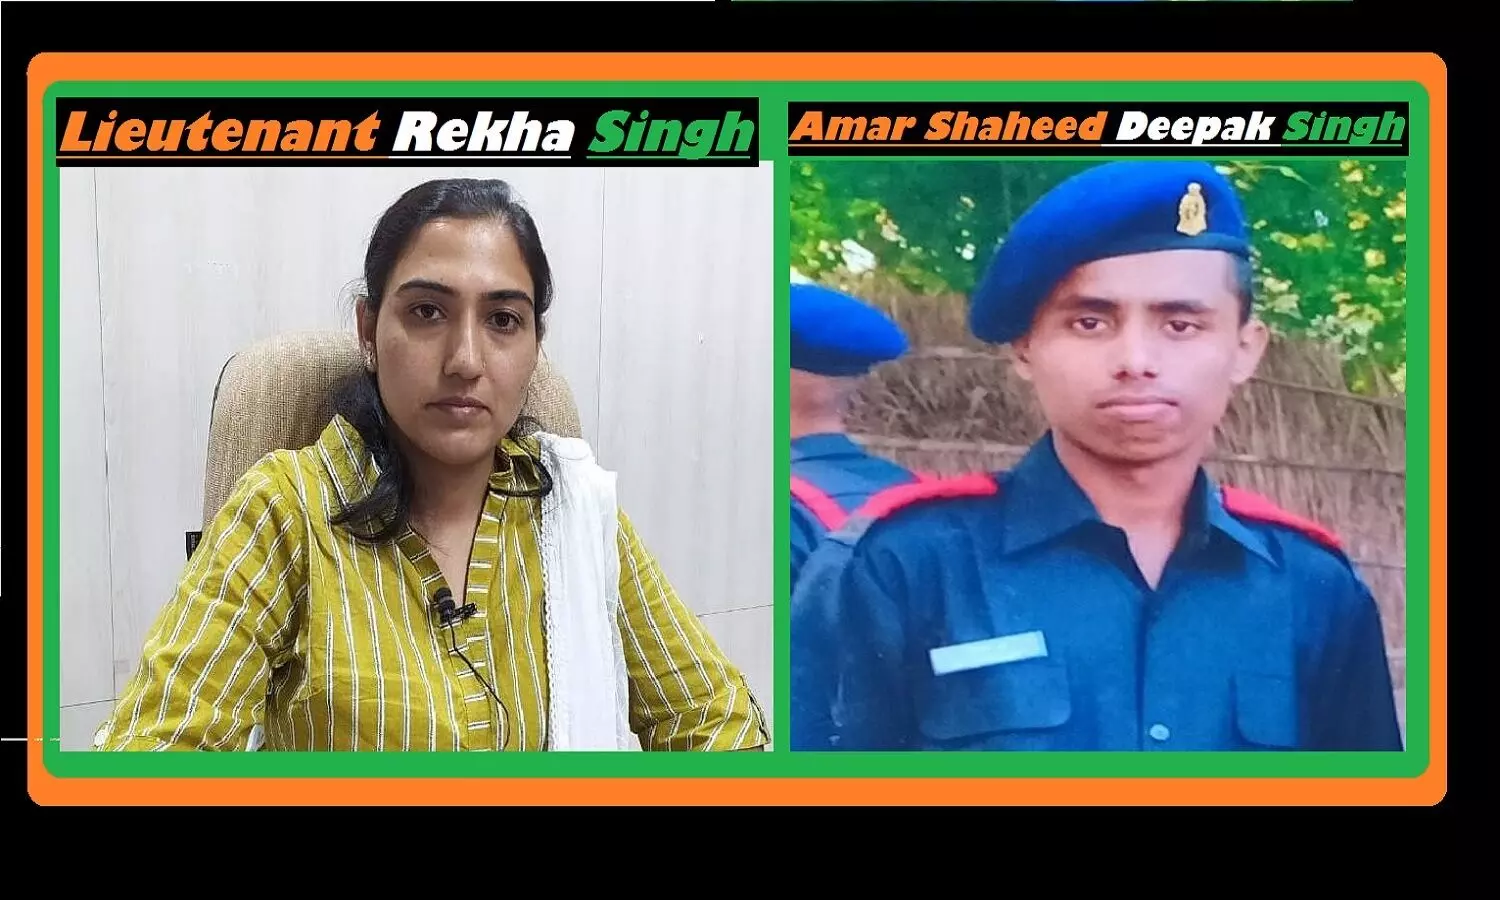 मध्य प्रदेश: रीवा के अमर शहीद दीपक सिंह की पत्नी रेखा सिंह बनीं सेना में लेफ्टिनेंट